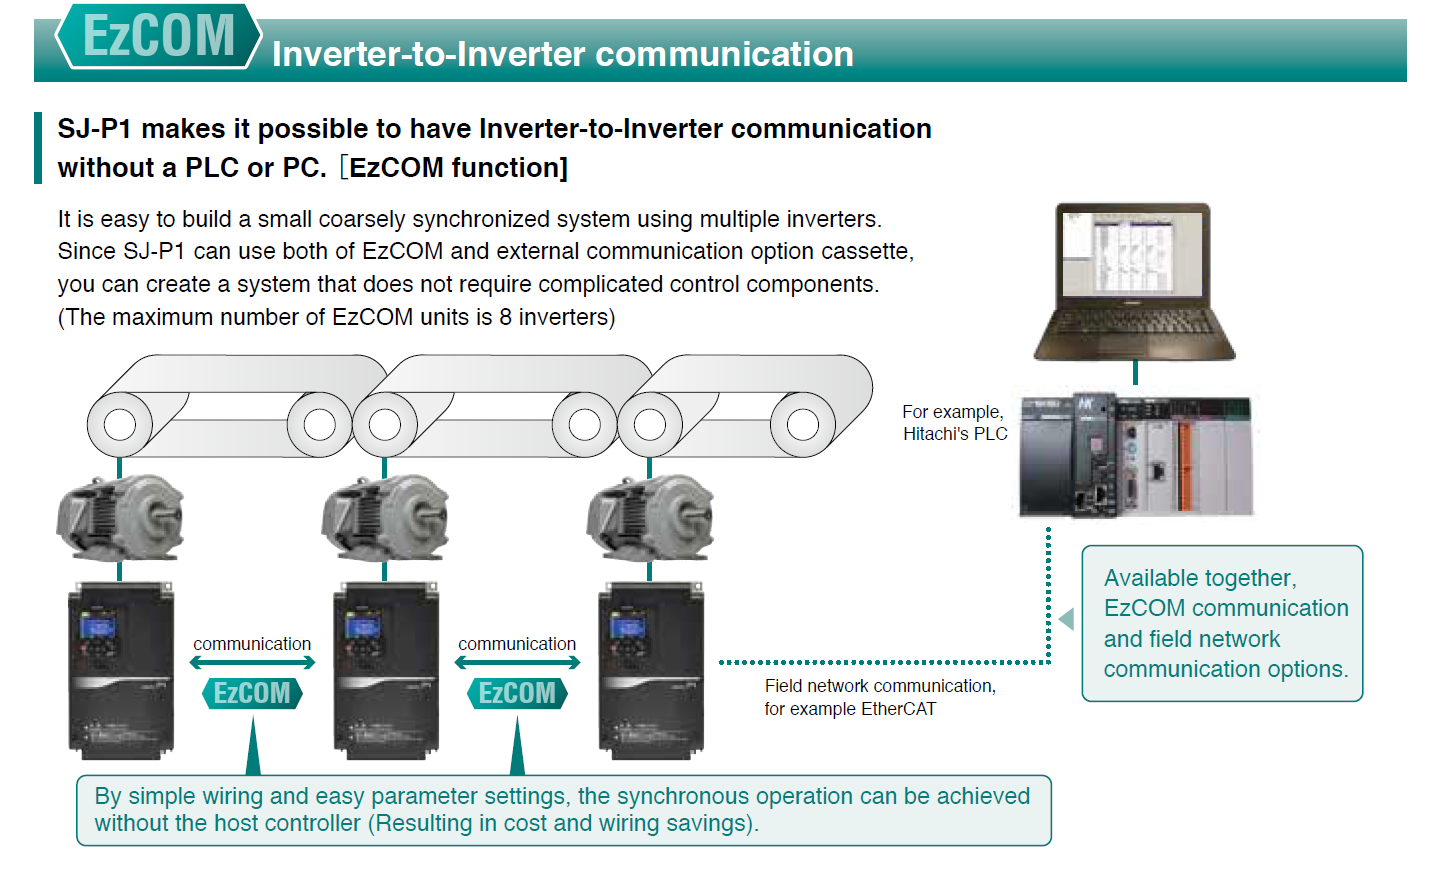 Inverter-to-Inverter communication